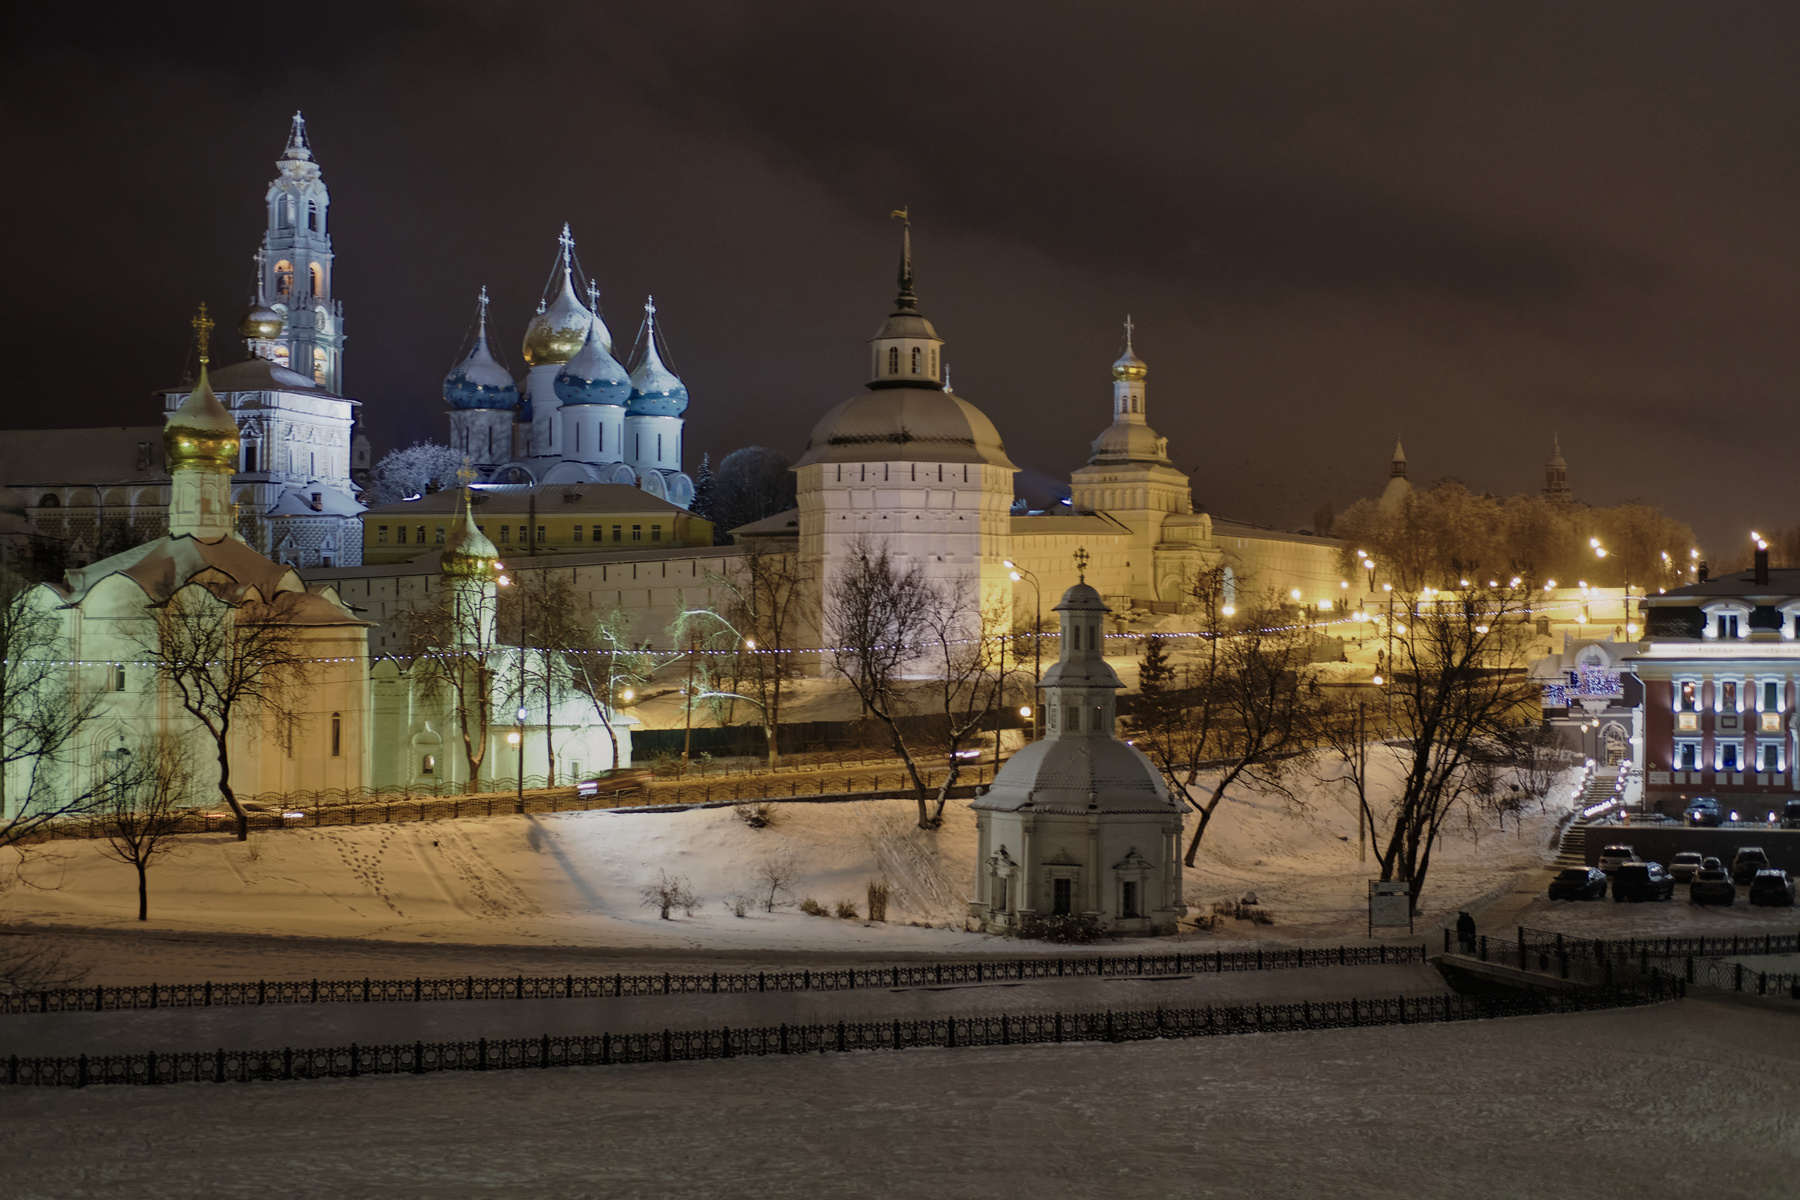 Зимняя ночь в Тро́ице-Се́ргиевой ла́вре (Сергиев Посад) пейзаж моностырь